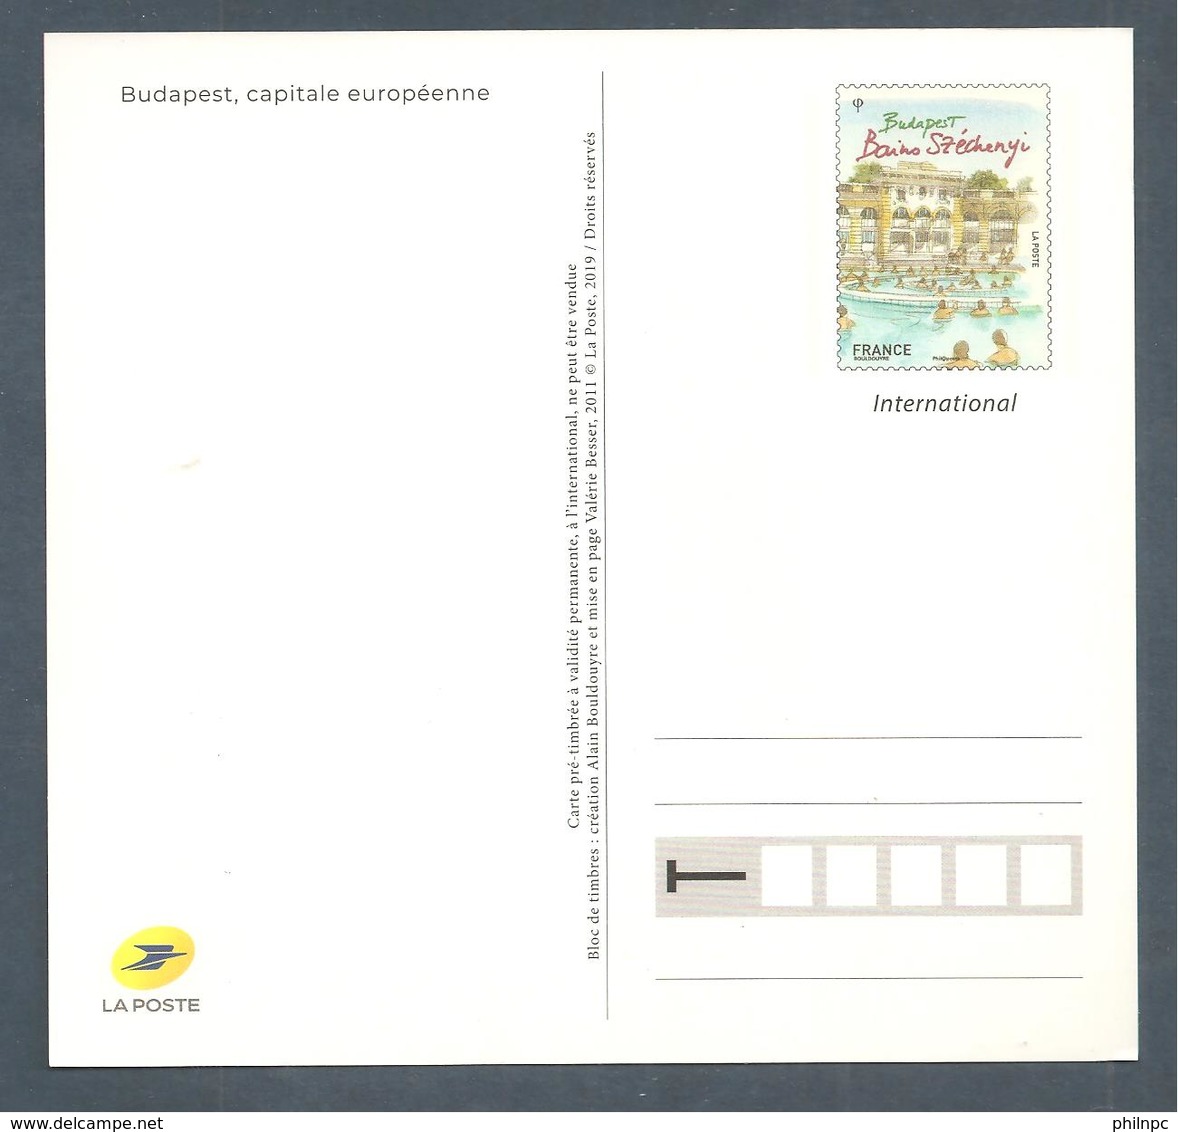 France, Entier Postal, Prêt à Poster, Carte, 4541, Neuf, TTB, Capitale Européenne, Budapest, Bains Széchenyi - Prêts-à-poster: Other (1995-...)